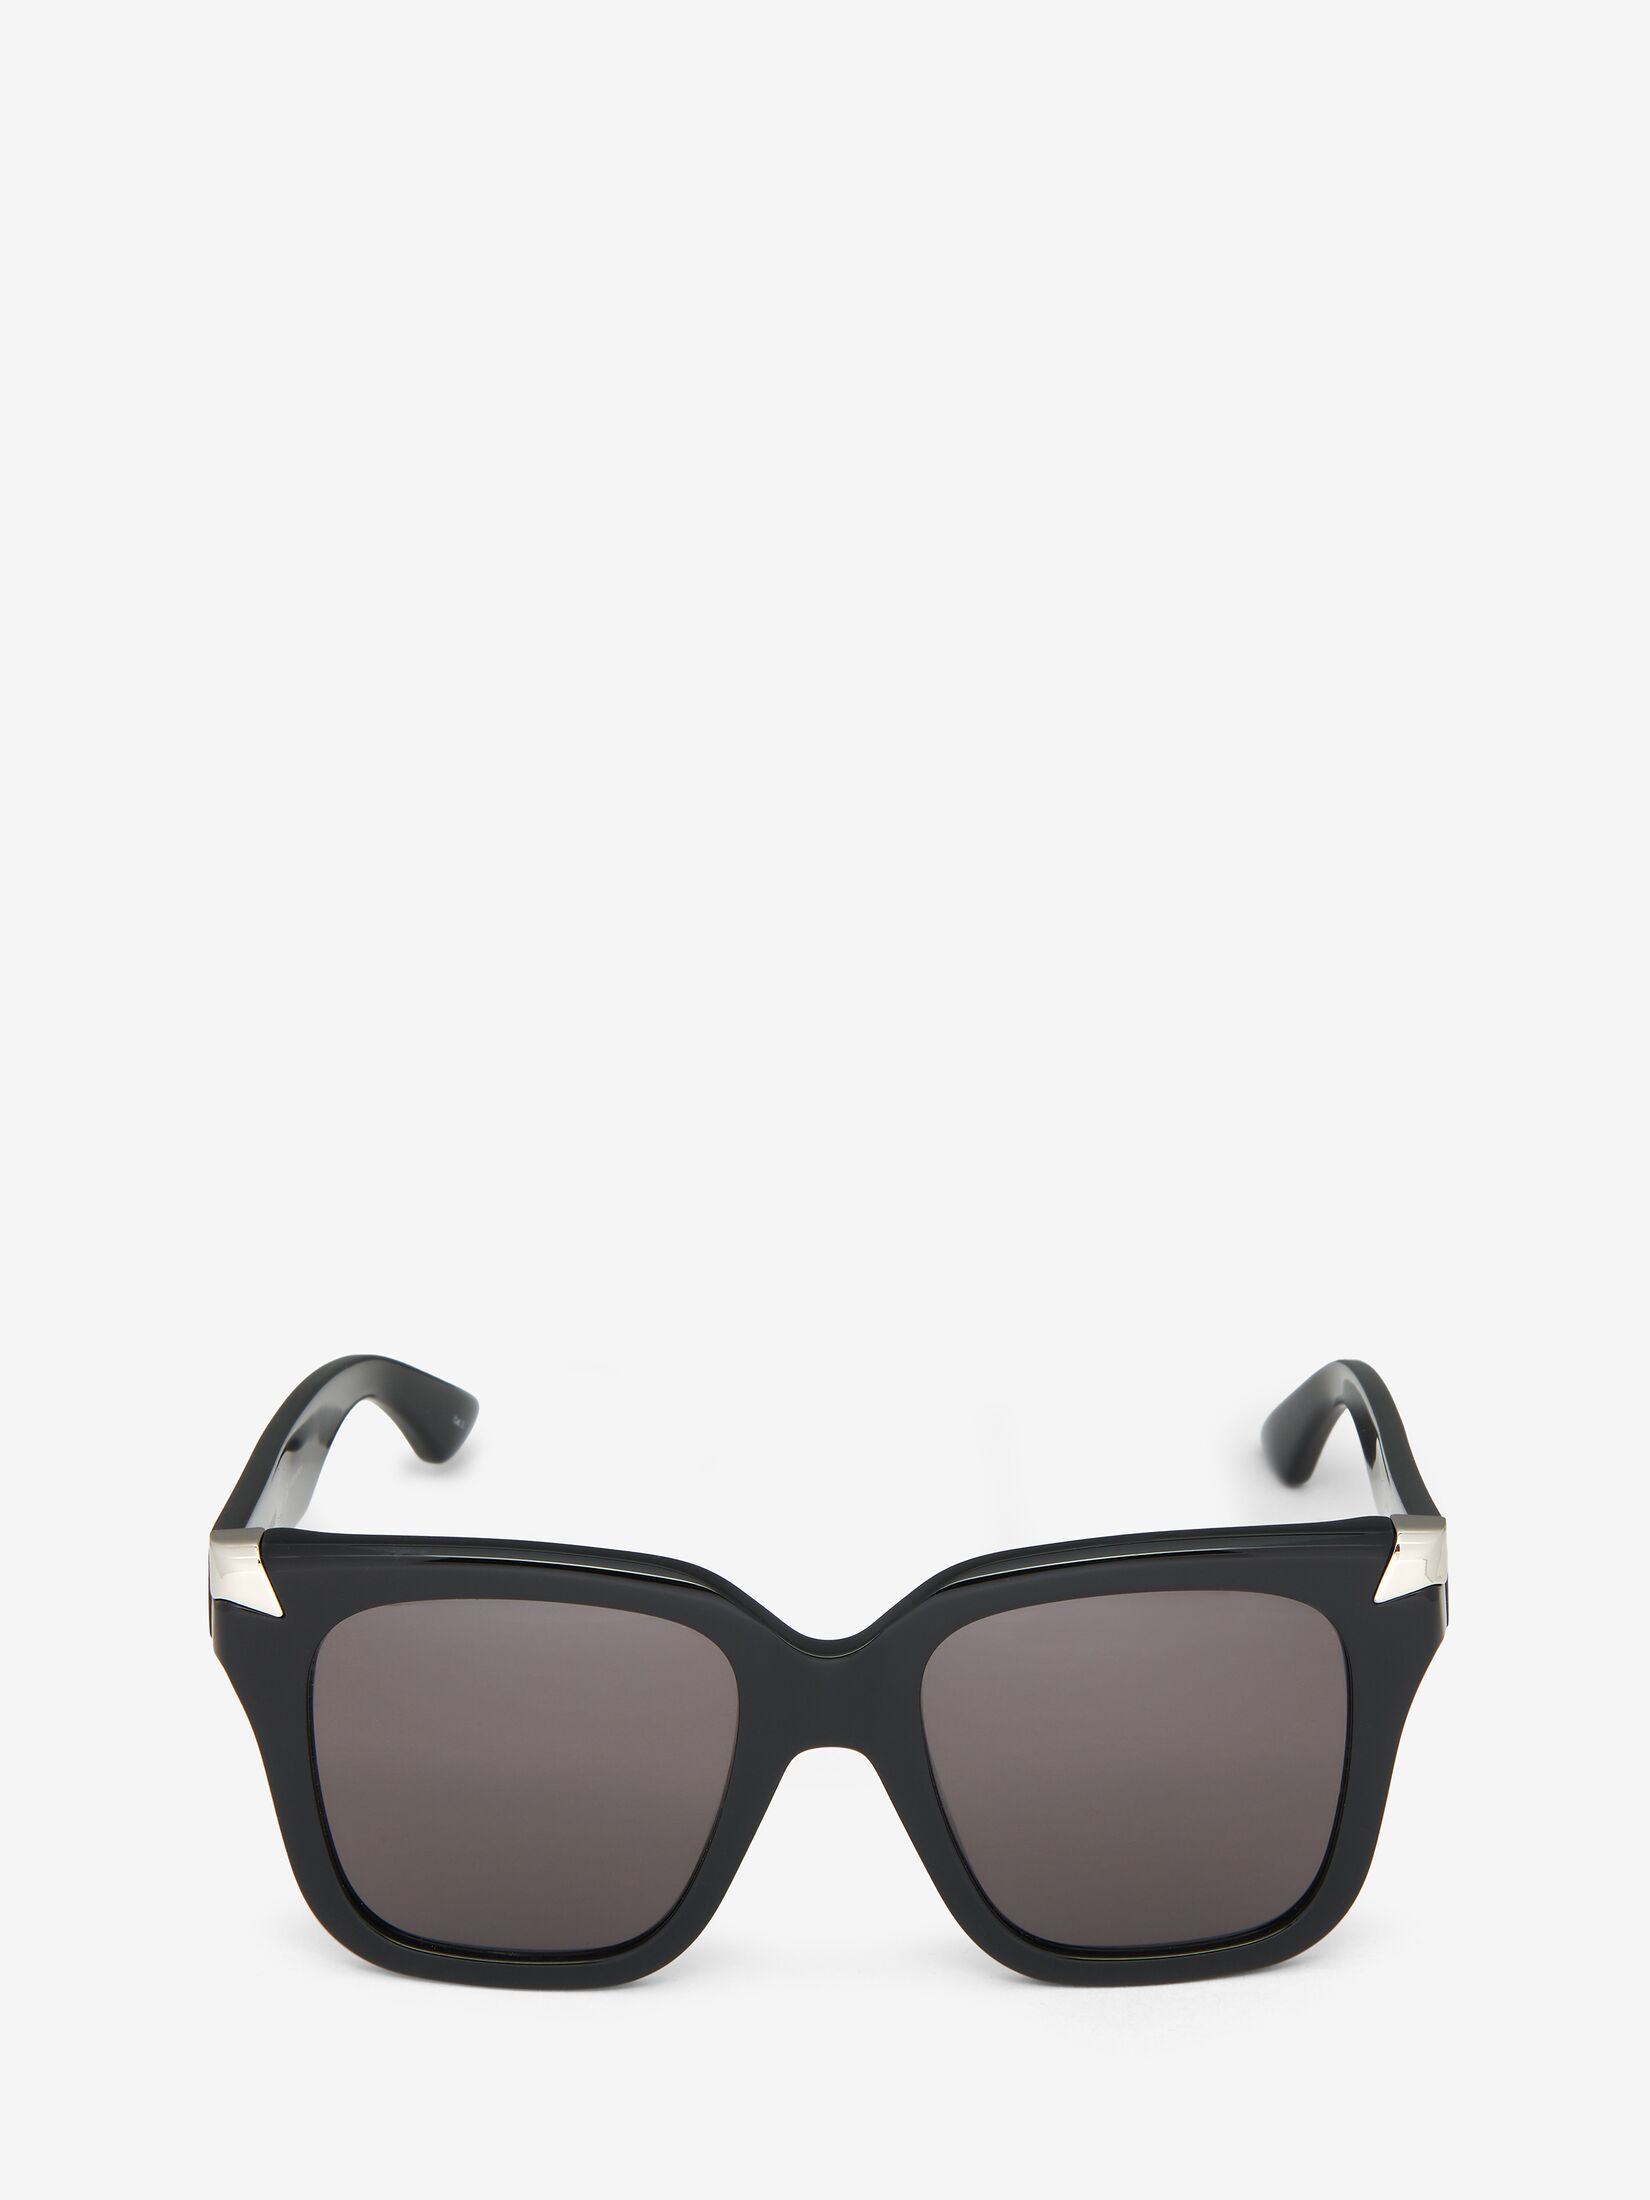 Women's Designer Sunglasses | Eyewear | Alexander McQueen UK